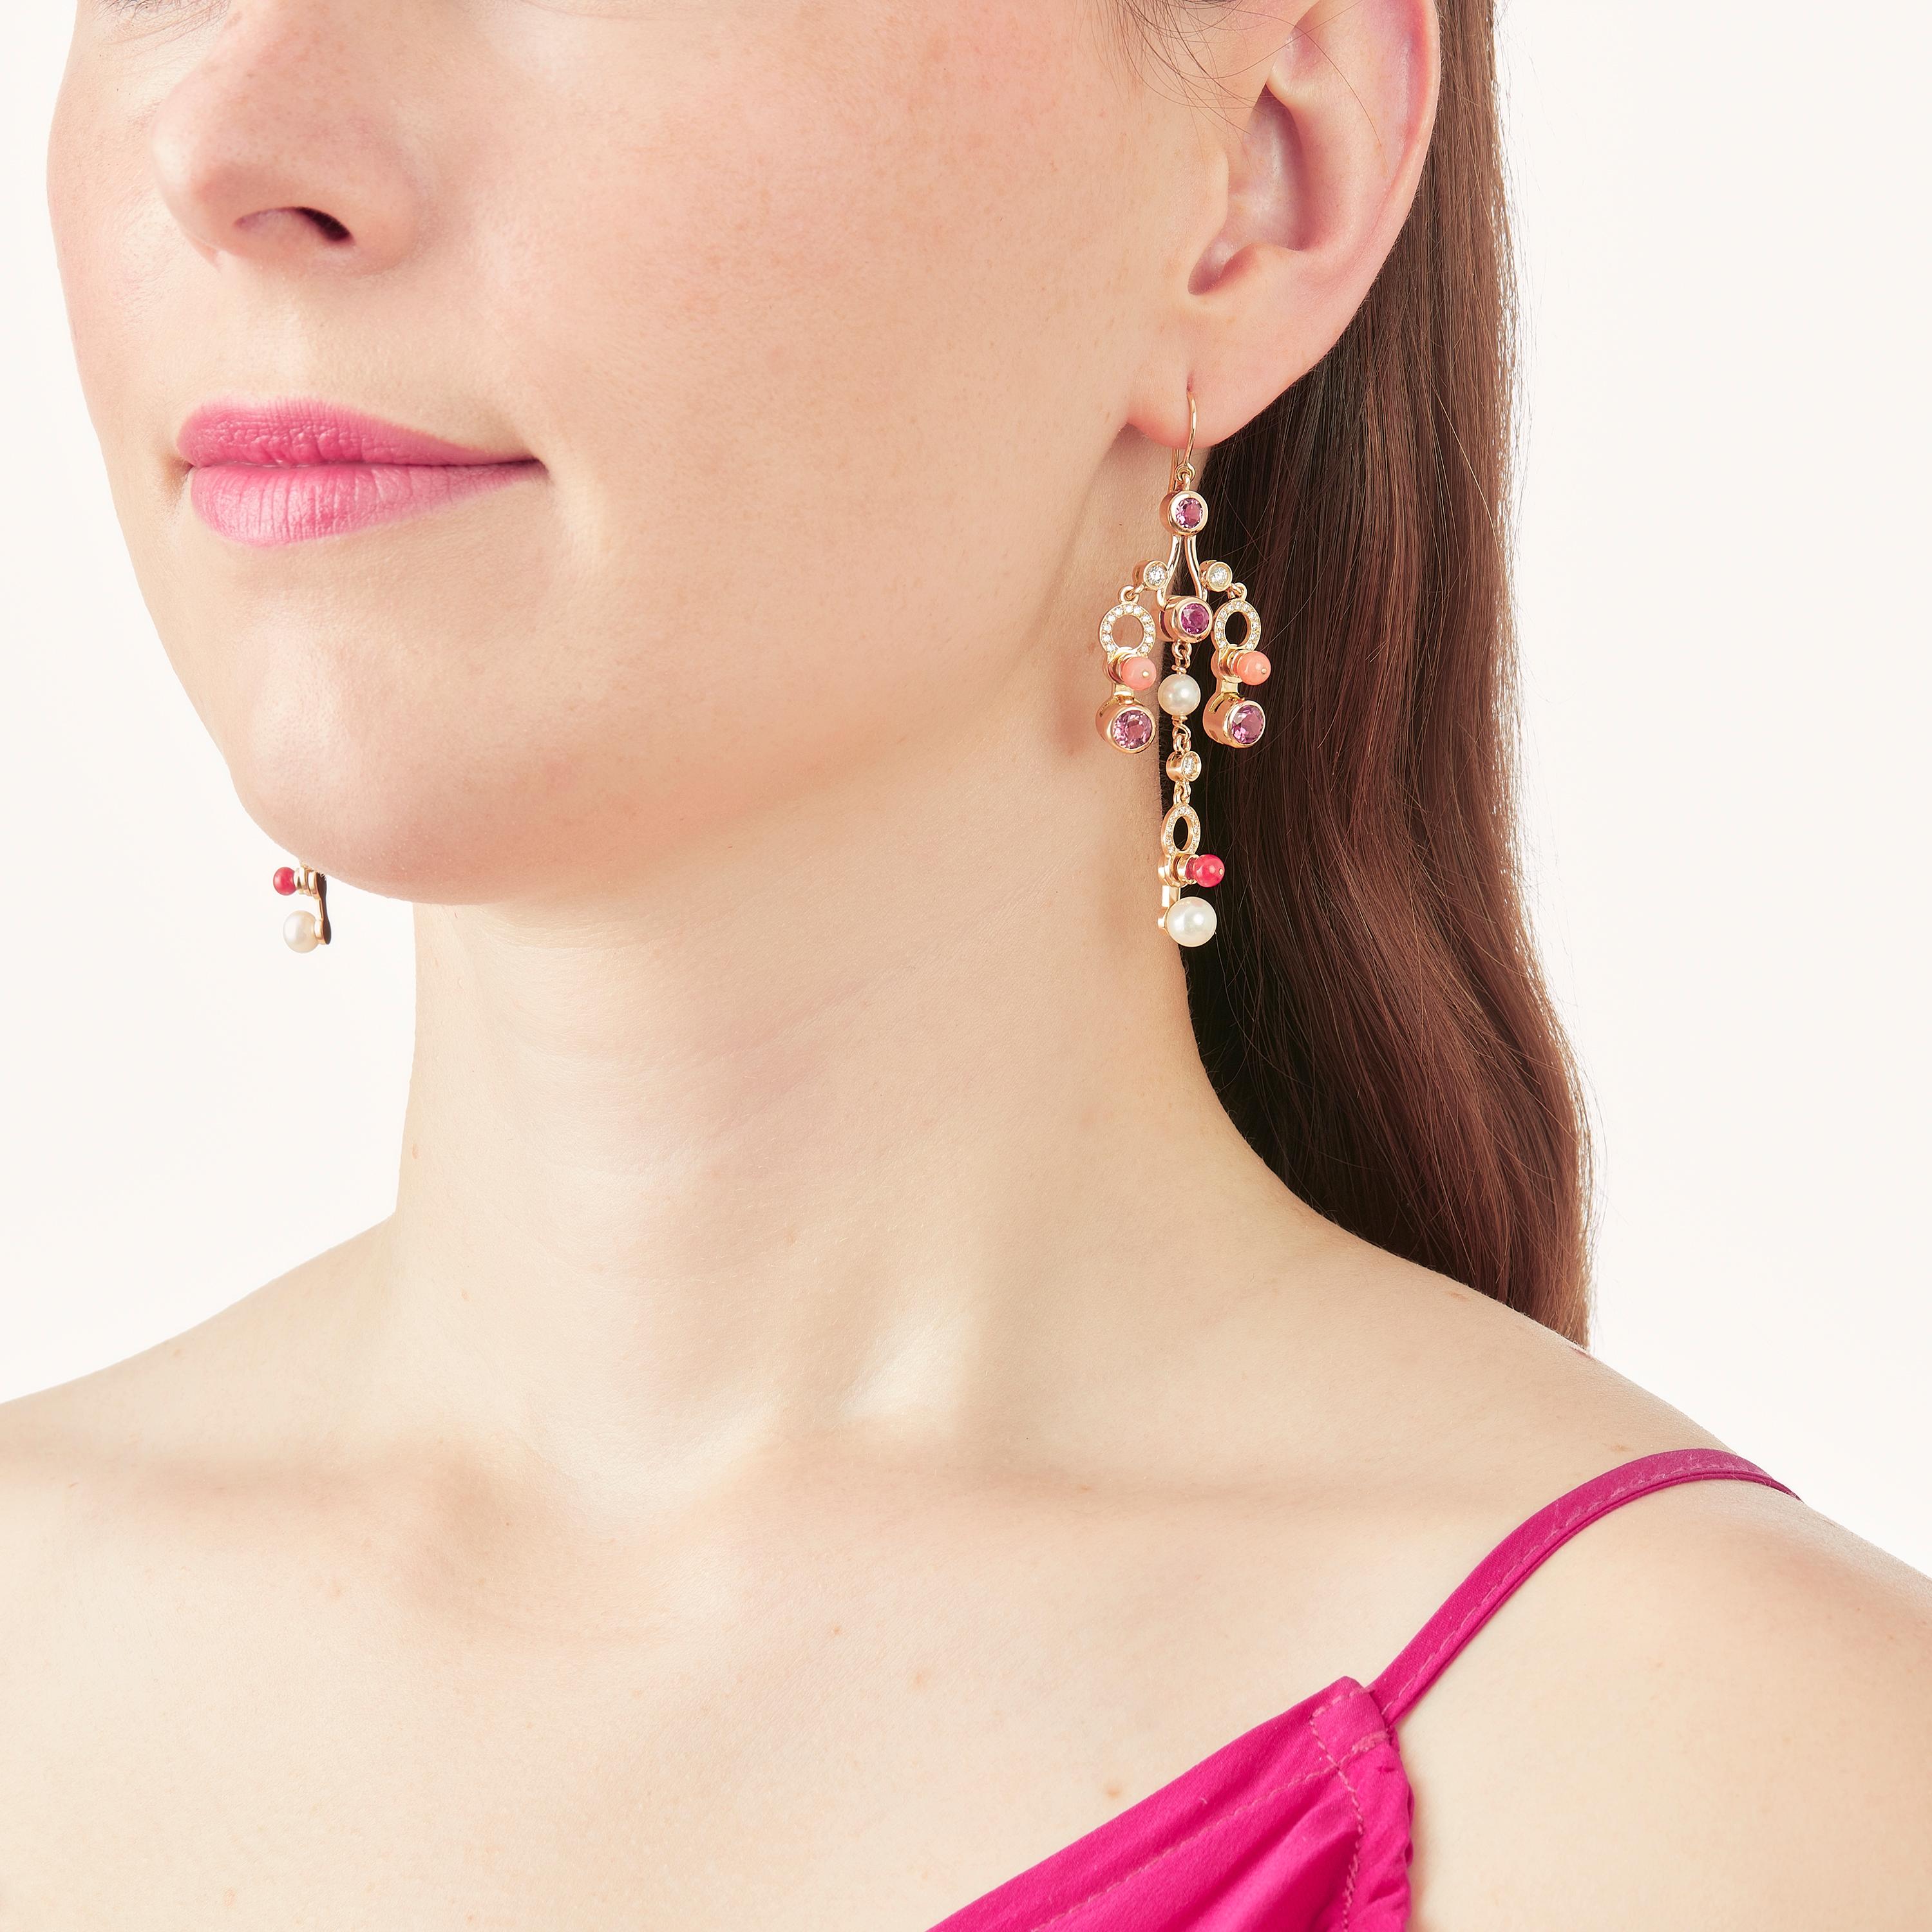 Die im Mailänder Atelier von Nathalie Jean von Hand gefertigten Microcosmos Chandelier Earrings sind wie ein Spiel, eine Konstruktion oder ein ausgeklügeltes Mobil in der Luft konzipiert. An Goldringen befestigte Formen baumeln leicht am Ohr, ihre